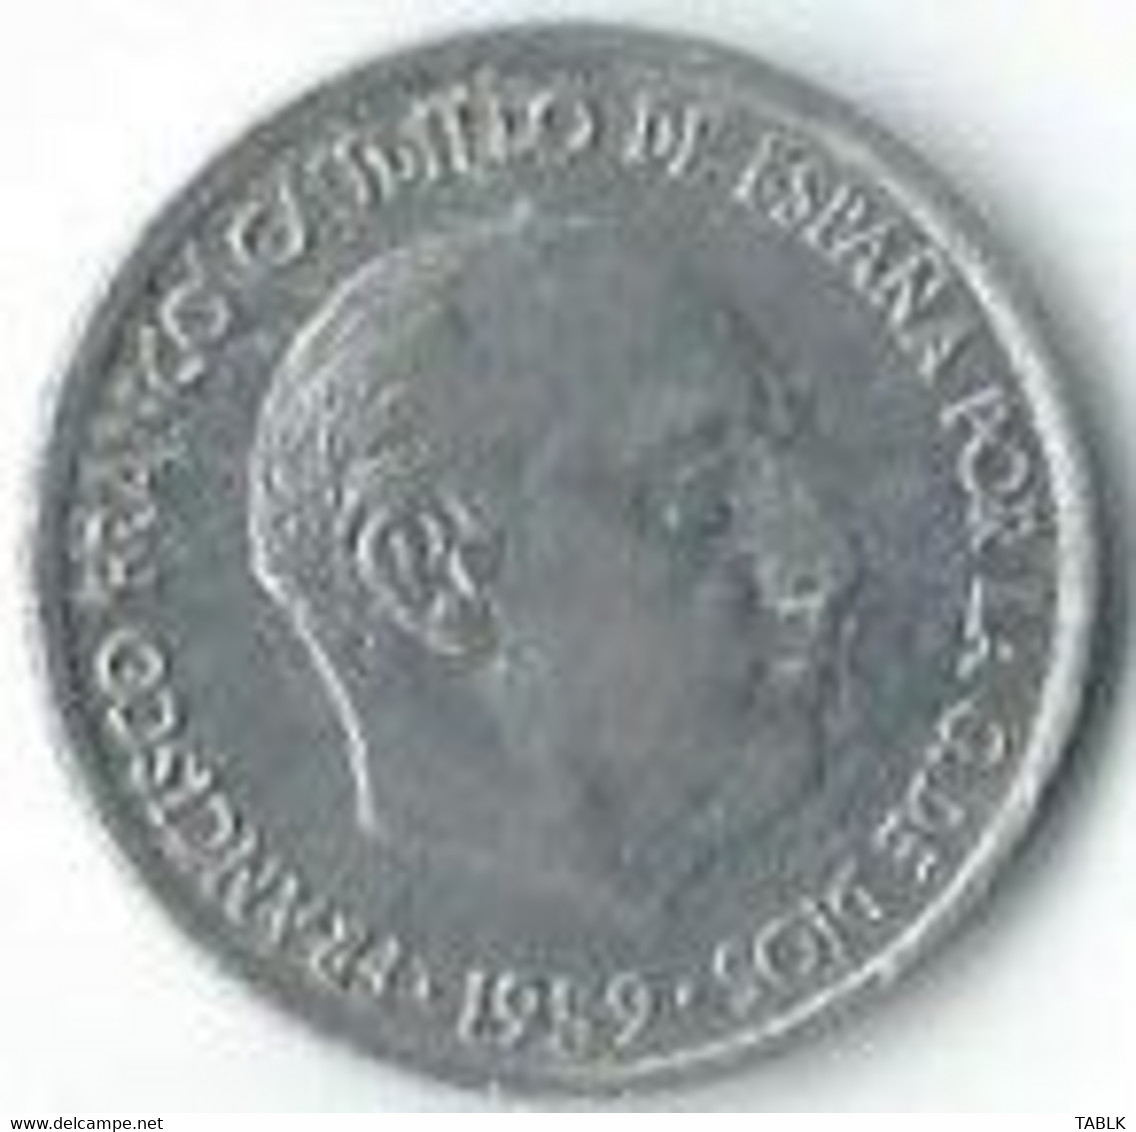 MM621 - SPANJE - SPAIN - 10 CENTIMOS 1959 - 10 Céntimos